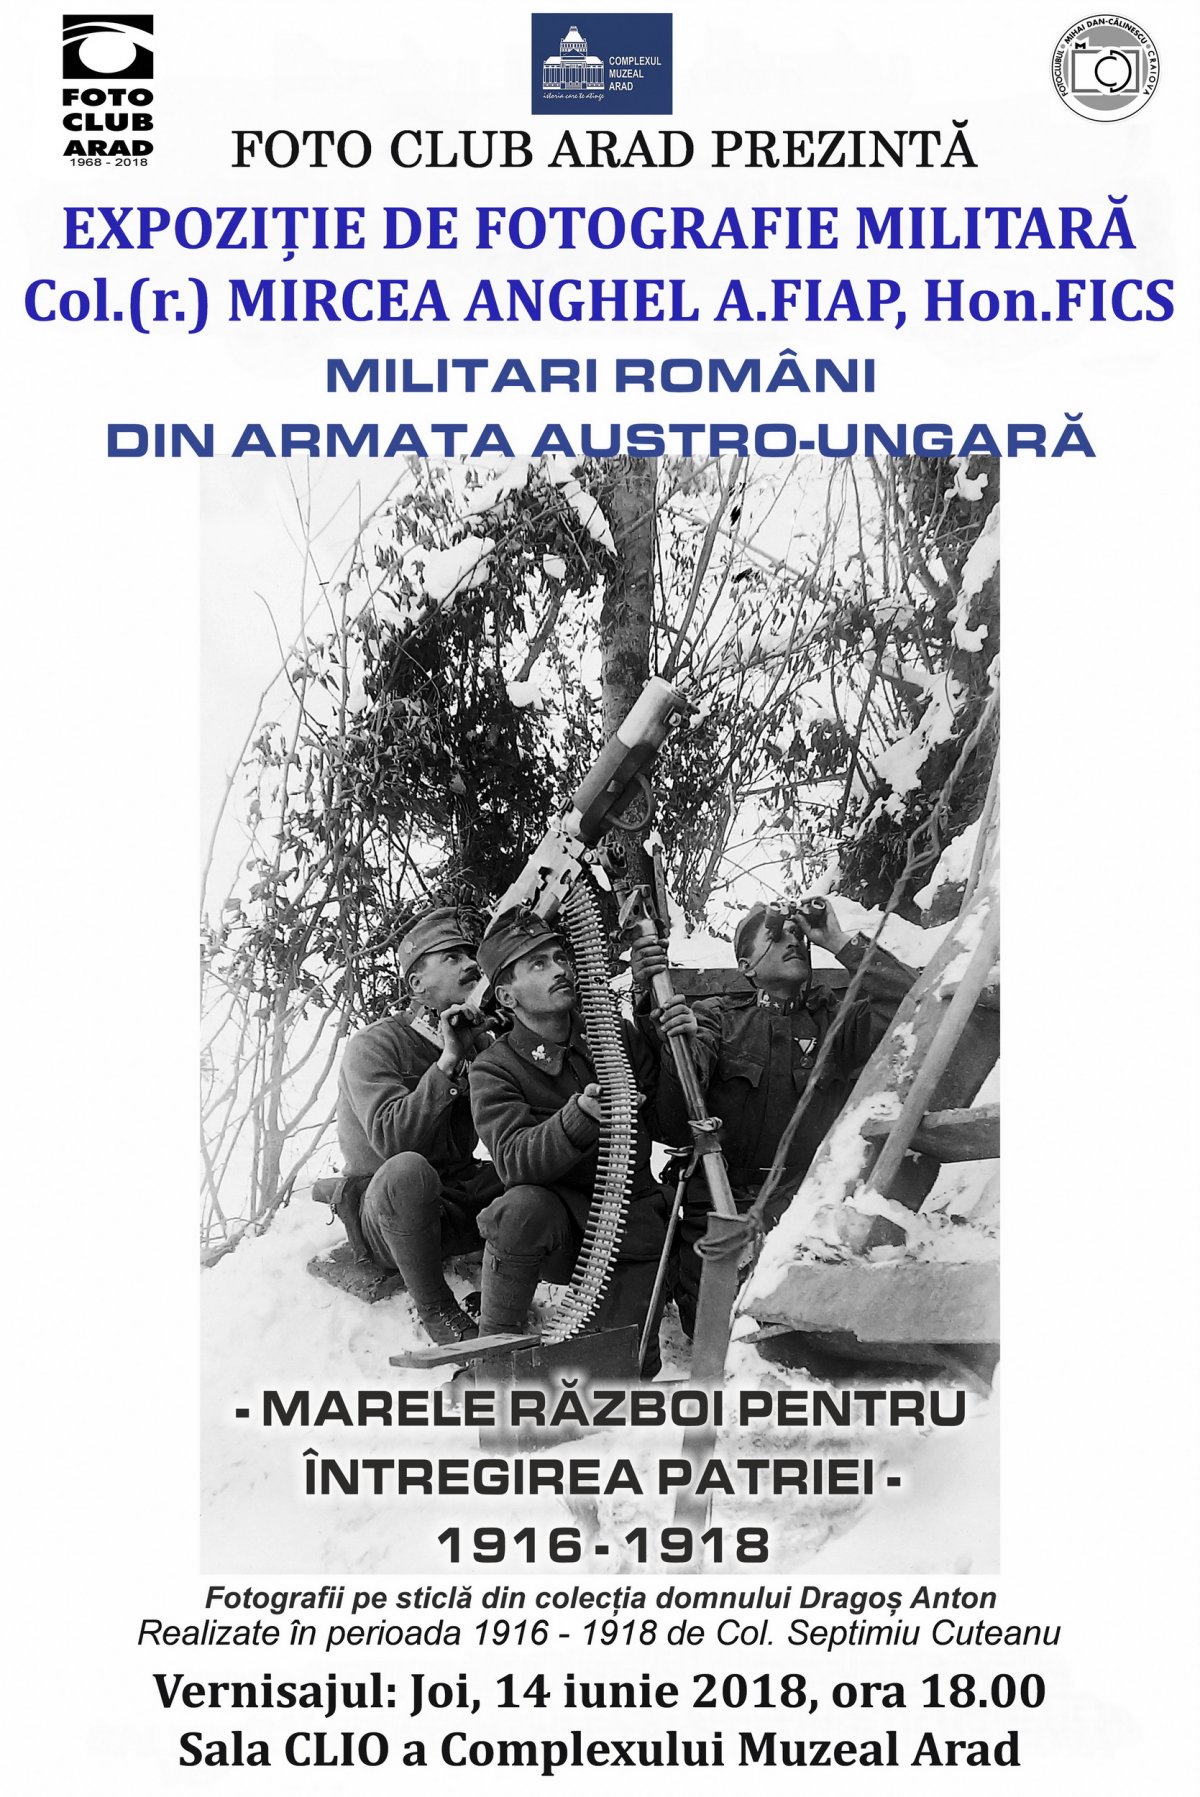 Expoziție de fotografie militară. Militari români în armata austro-ungară în perioada Marelui Război pentru Întregirea Patriei 1916 – 1918